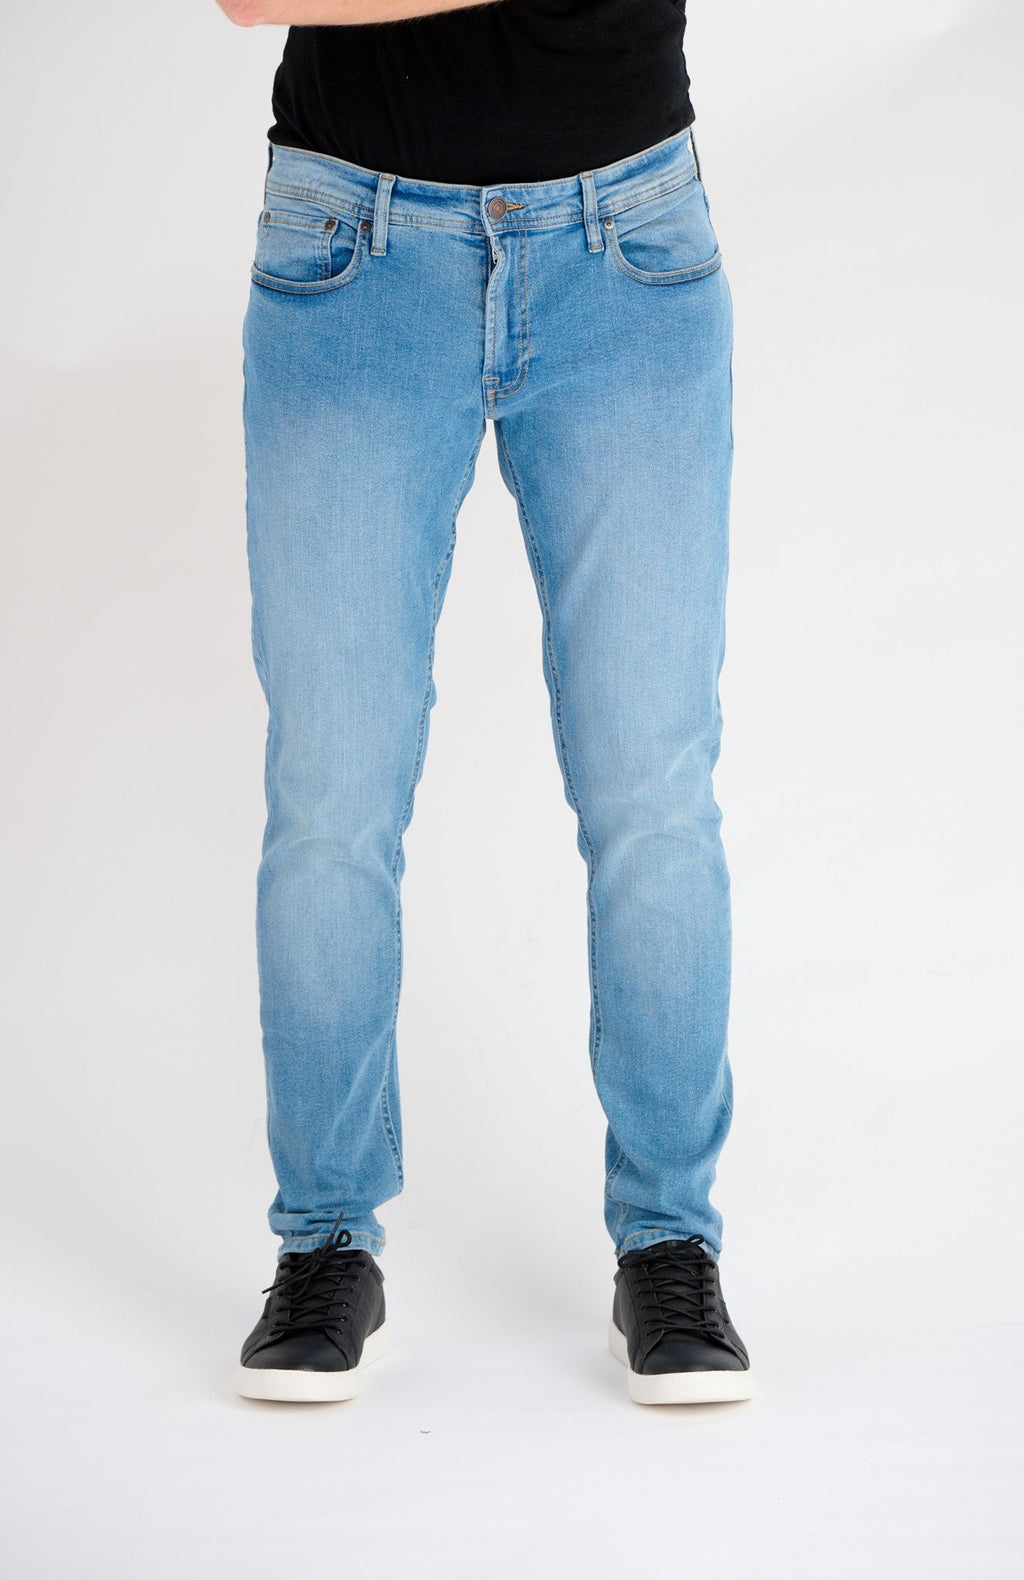 The Original Performance Jeans (caol) - denim gorm éadrom